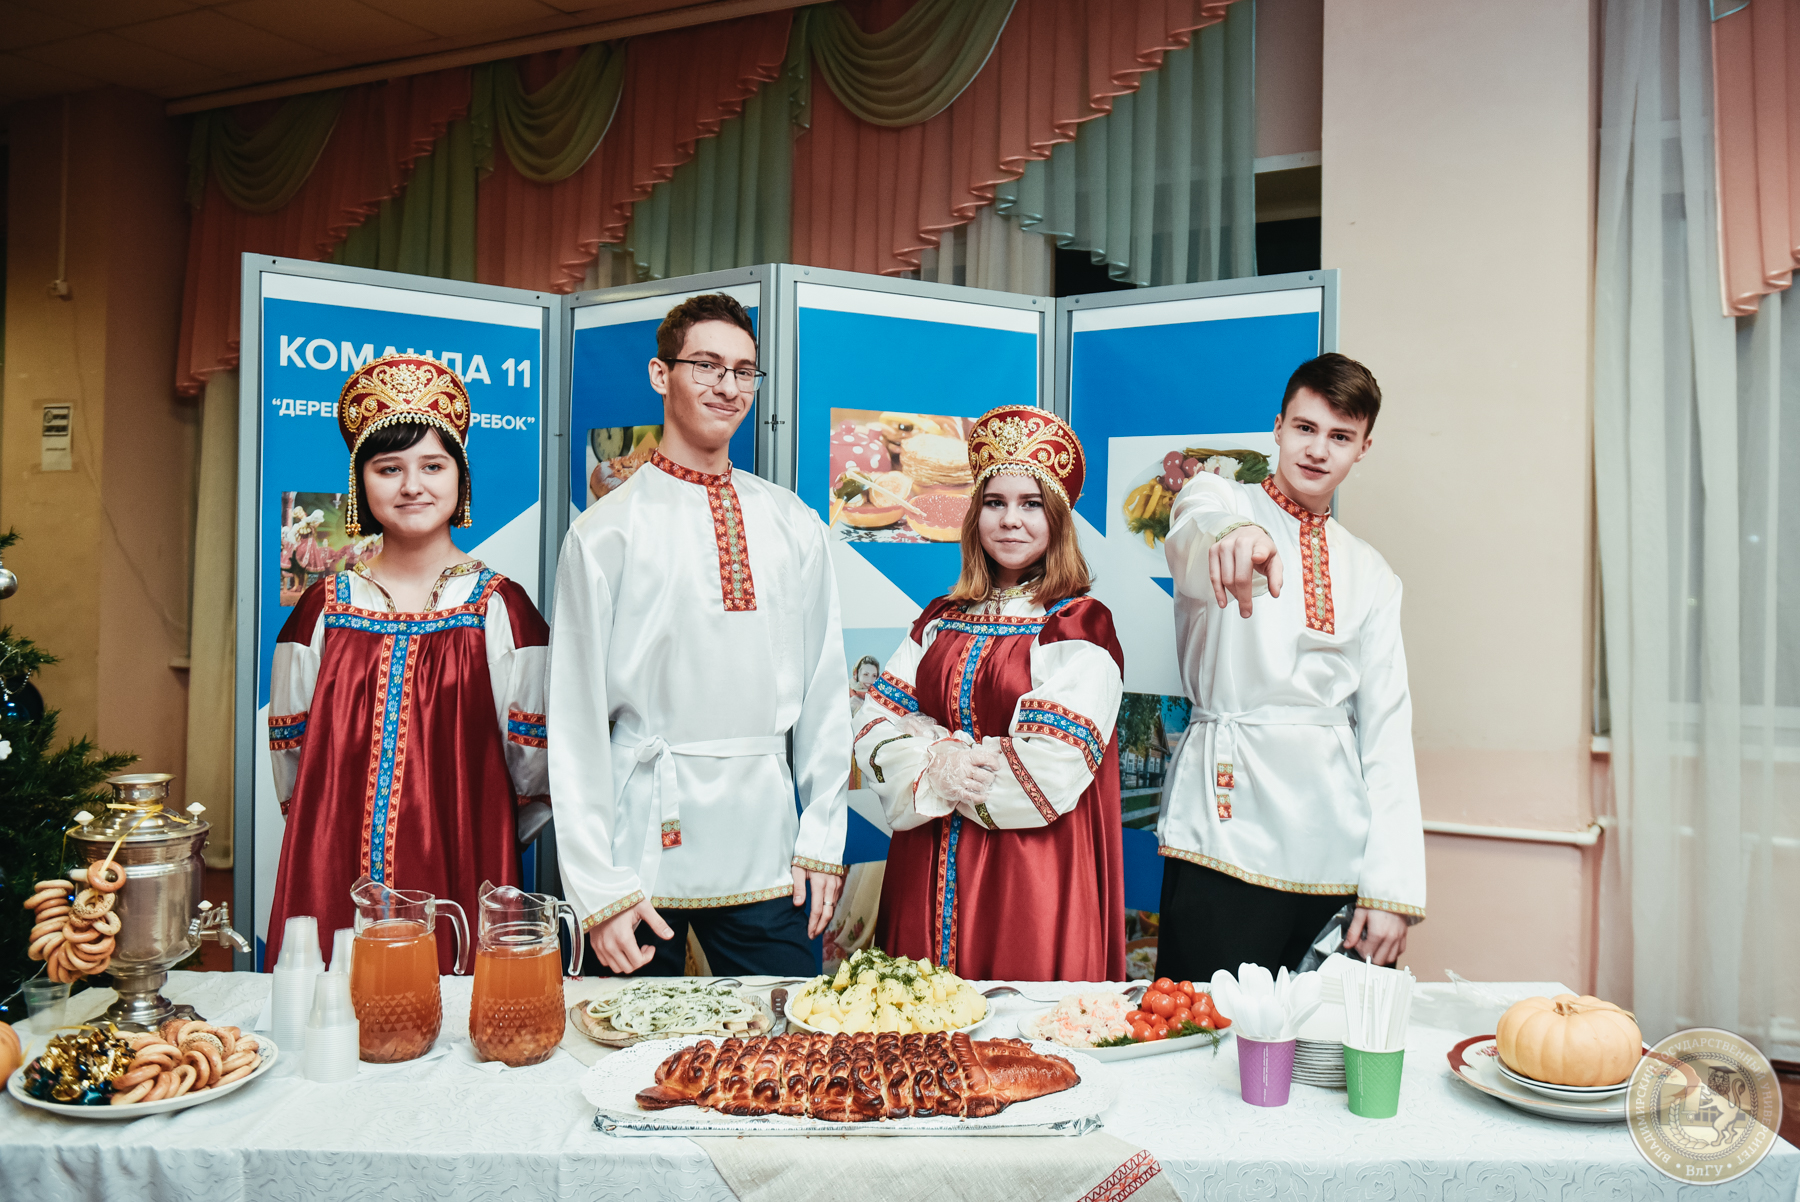 В рамках межрегионального форума «Международная мозаика» в ВлГу состоялся фестиваль национальных ресторанов «Кухни Мира», где 11 команд угощали традиционной едой и напитками из своих стран